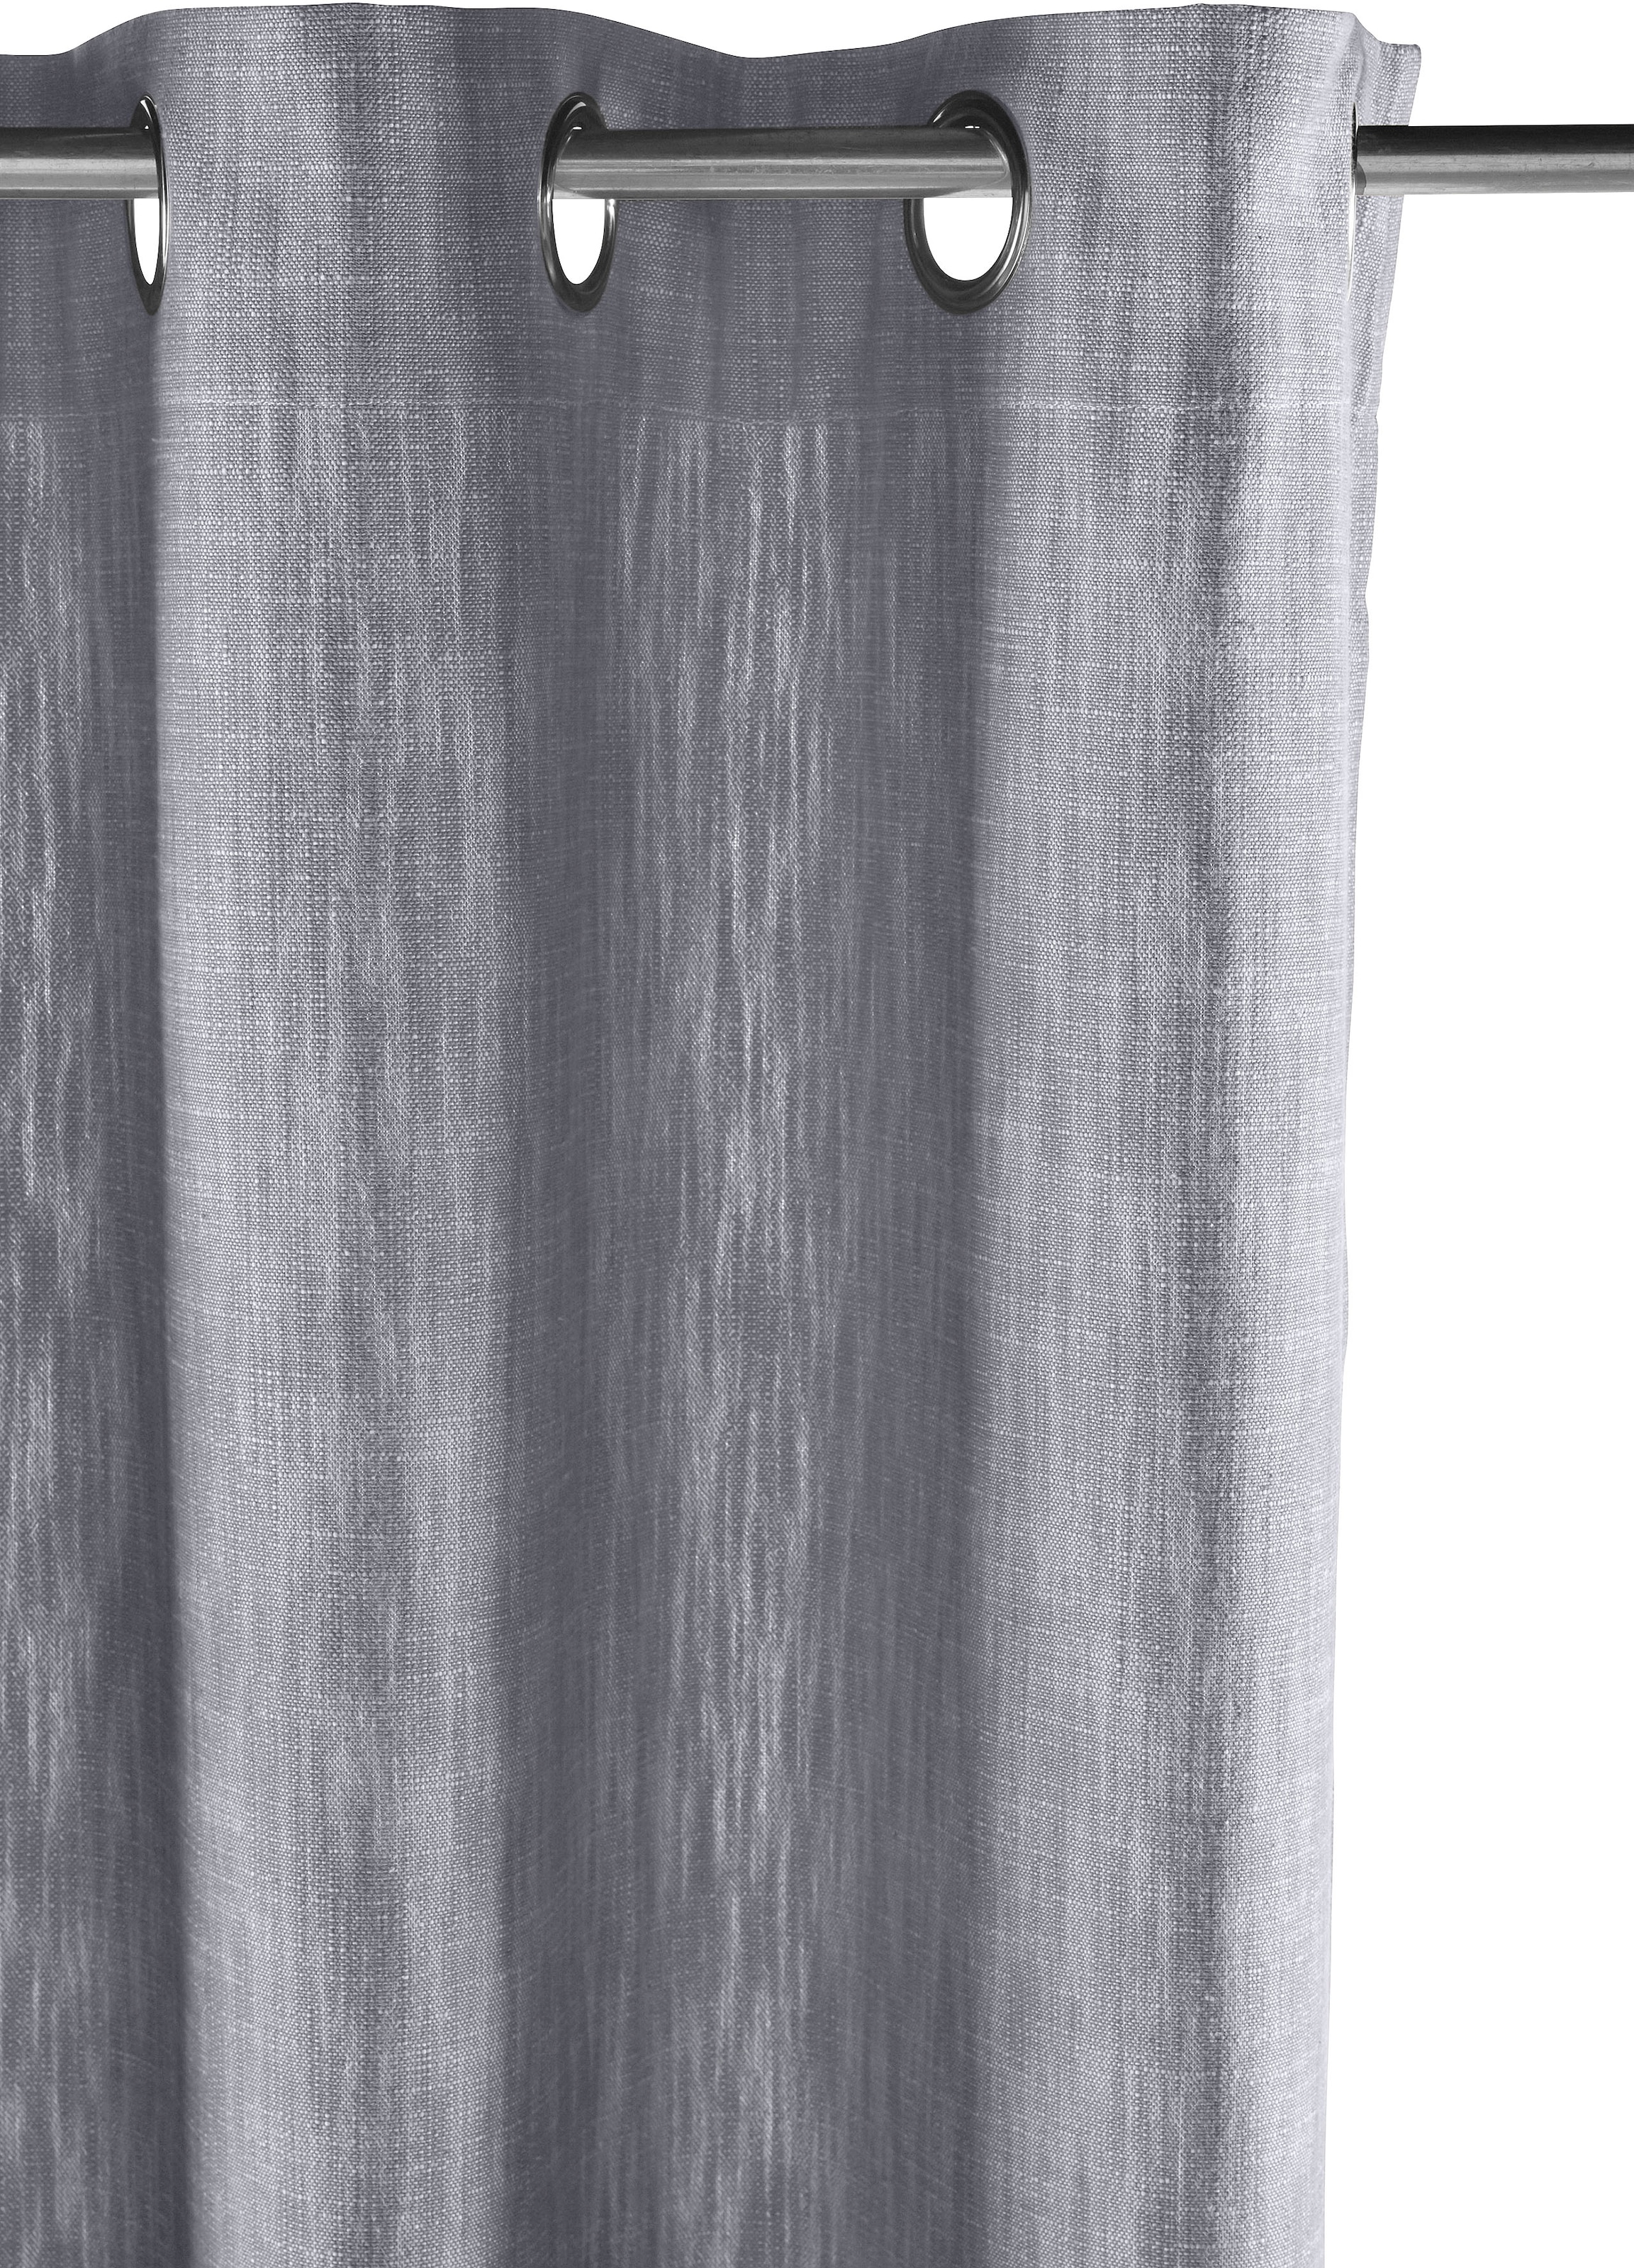 elbgestoeber Vorhang »Elbgarn«, (1 St.), basic Optik, blickdicht, Bio monochrom, auf Raten Leinen Baumwolle, bestellen